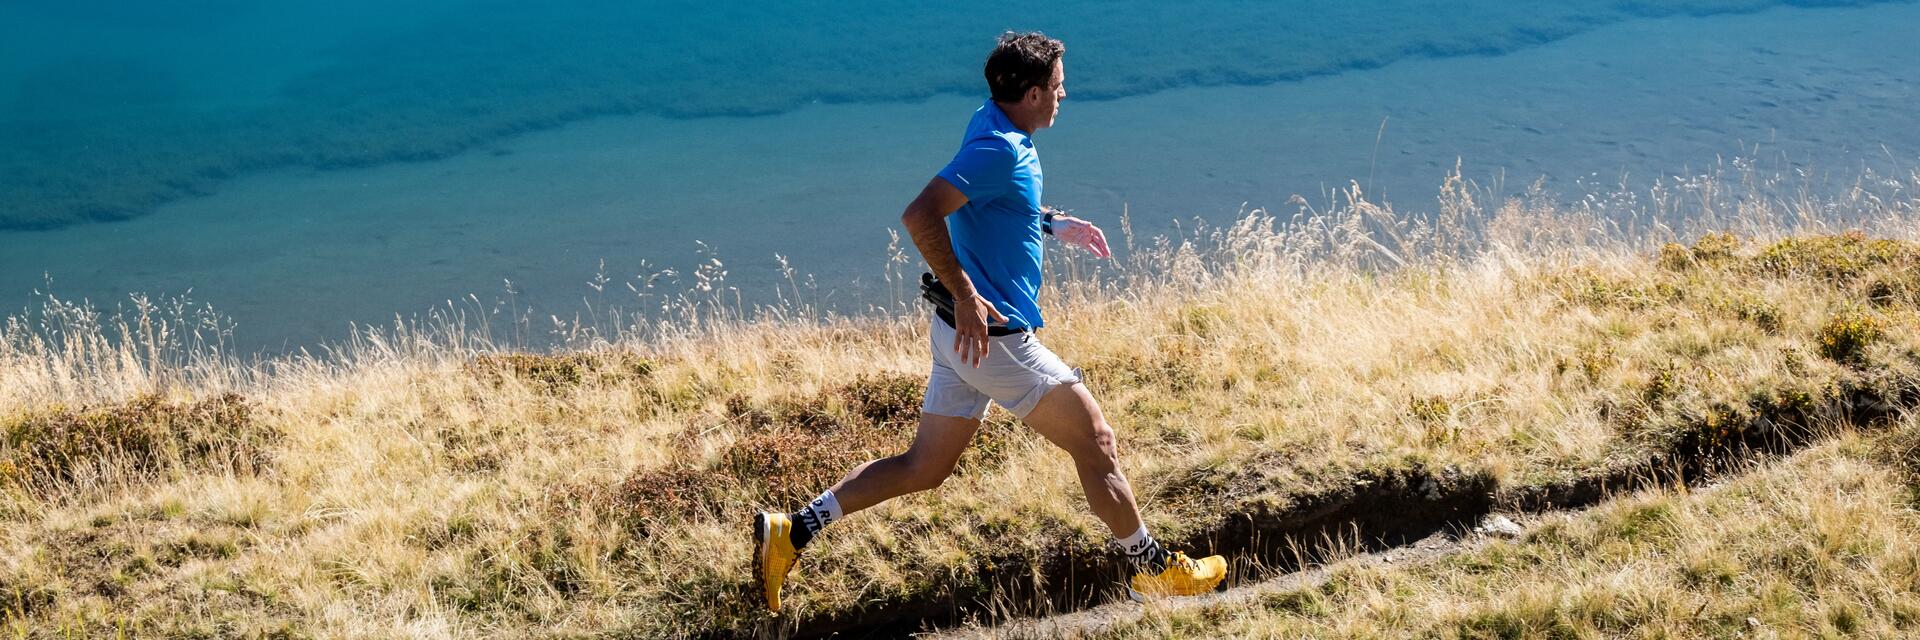 Mężczyzna w odzieży do biegania trenujący bieganie w terenie narażony na odciski po bieganiu